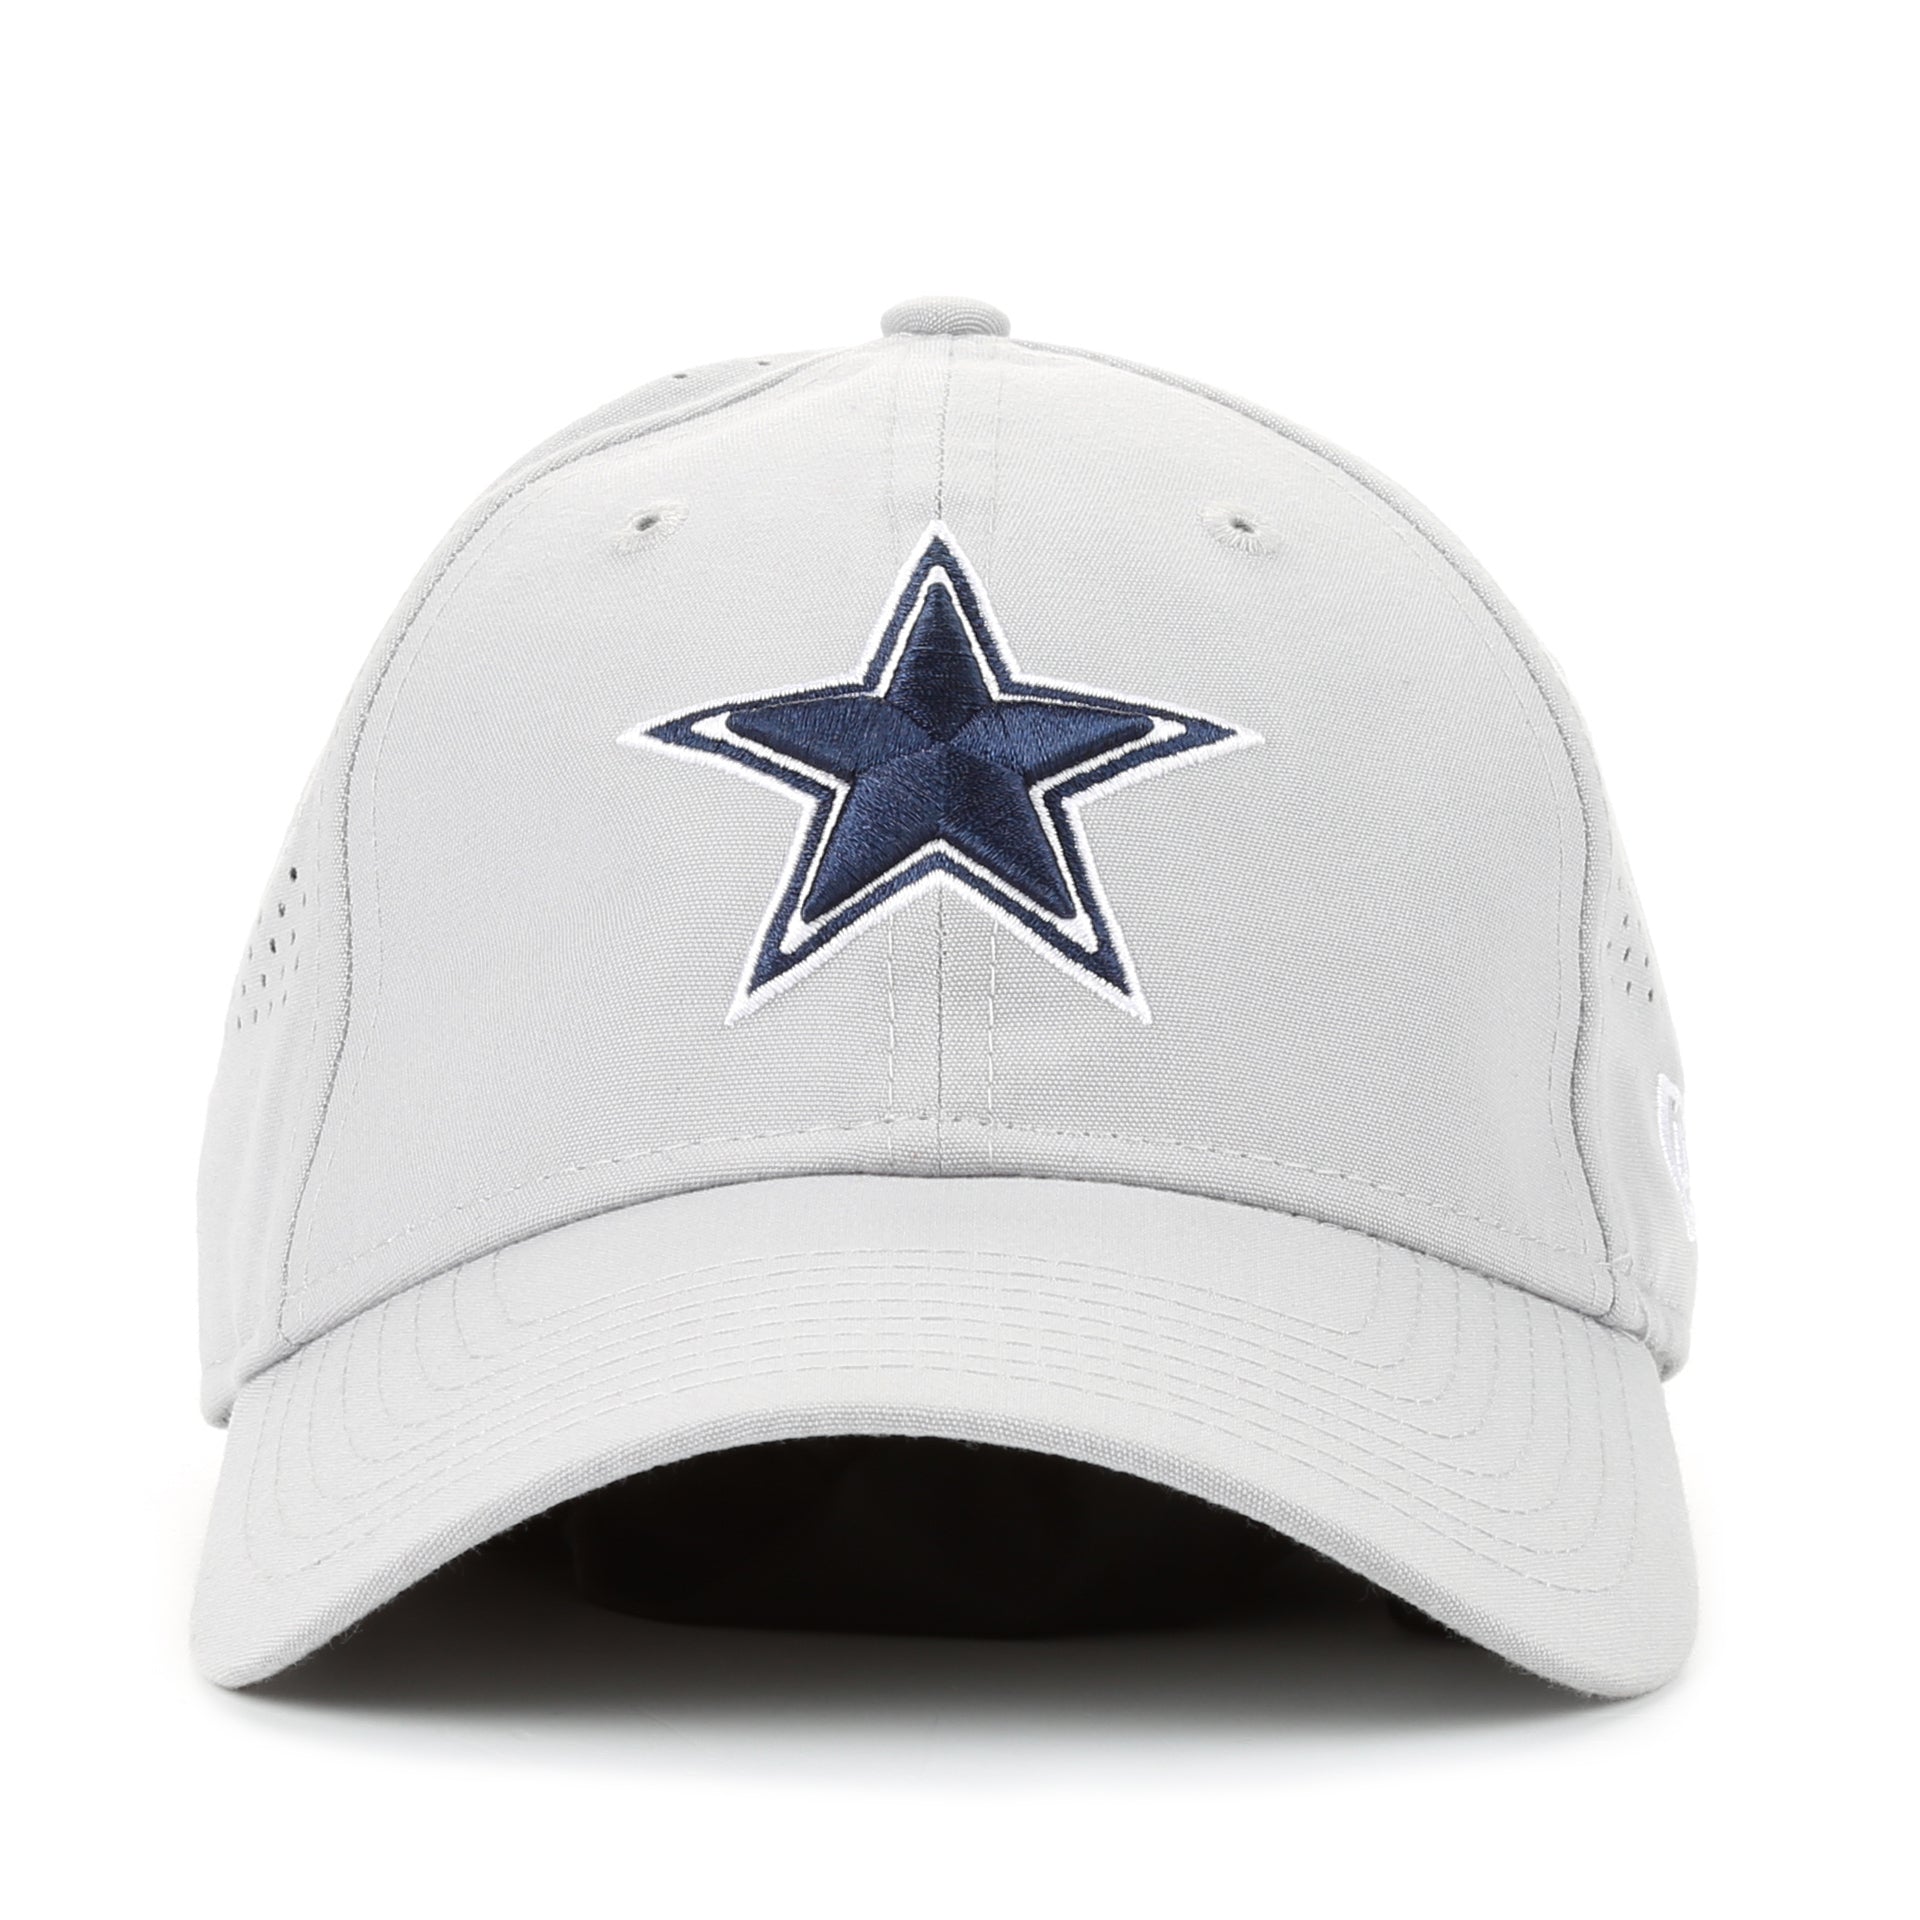 New Era 9Twenty On Field Training Cap - Dallas Cowboys/Grey - New Star